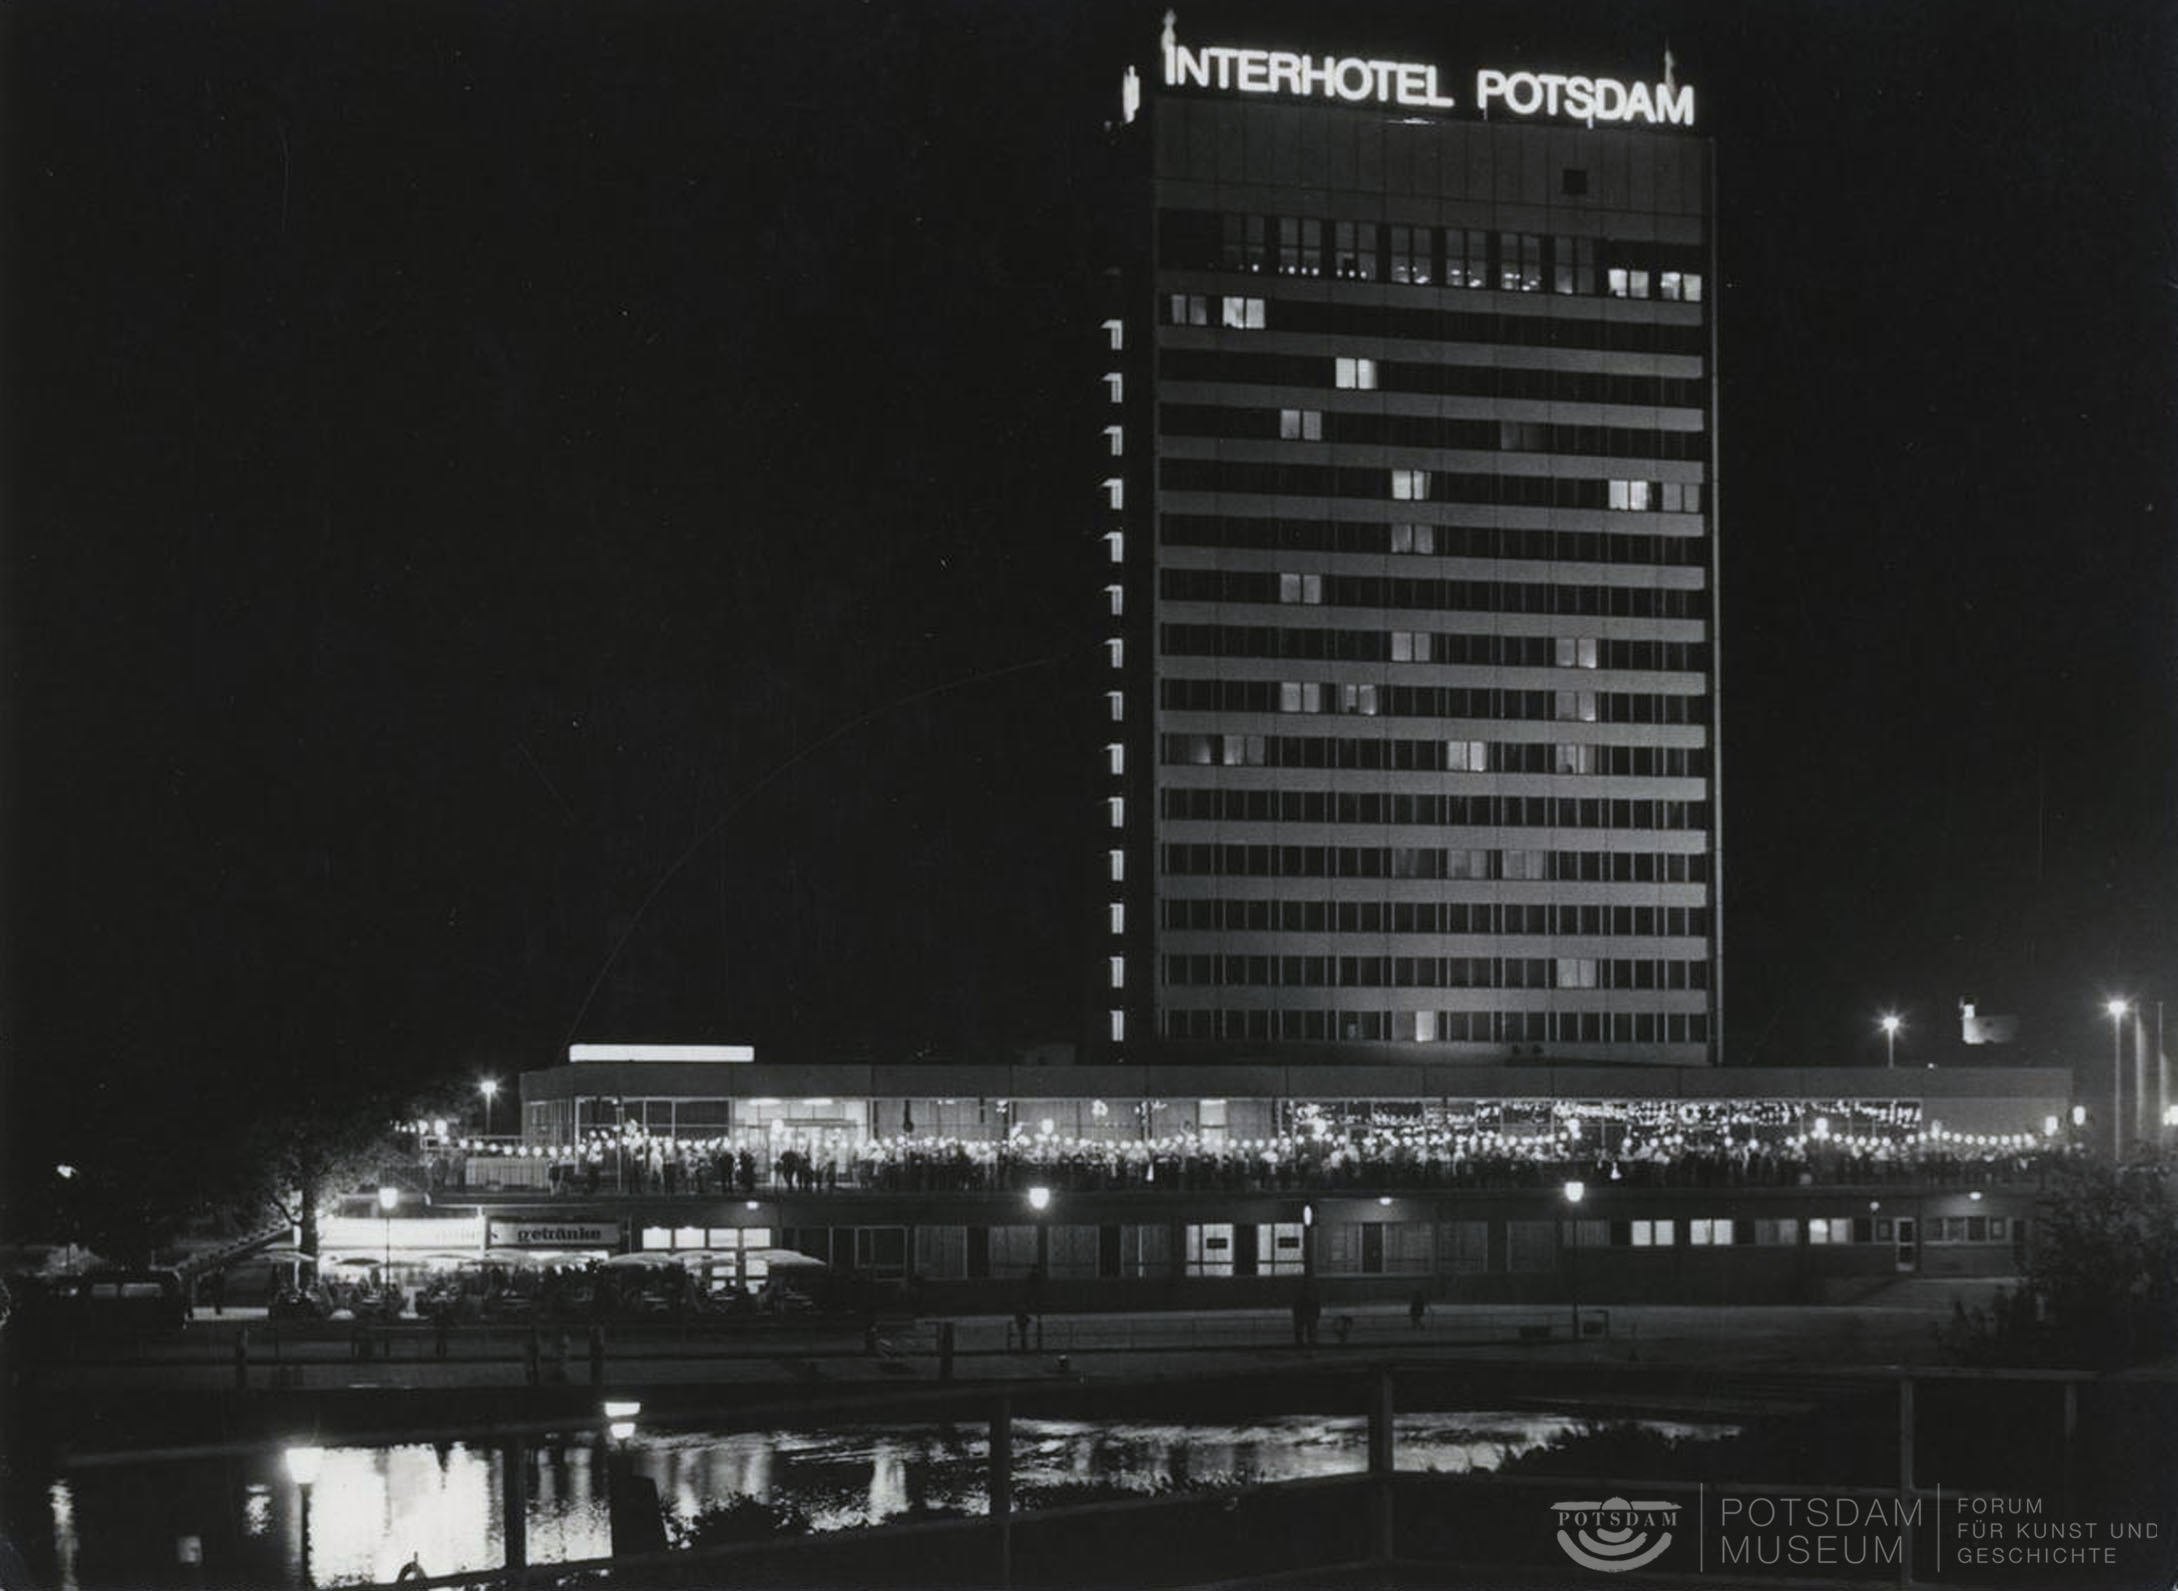 Interhotel Potsdam, Nachtaufnahme (Potsdam Museum - Forum für Kunst und Geschichte CC BY-NC-SA)